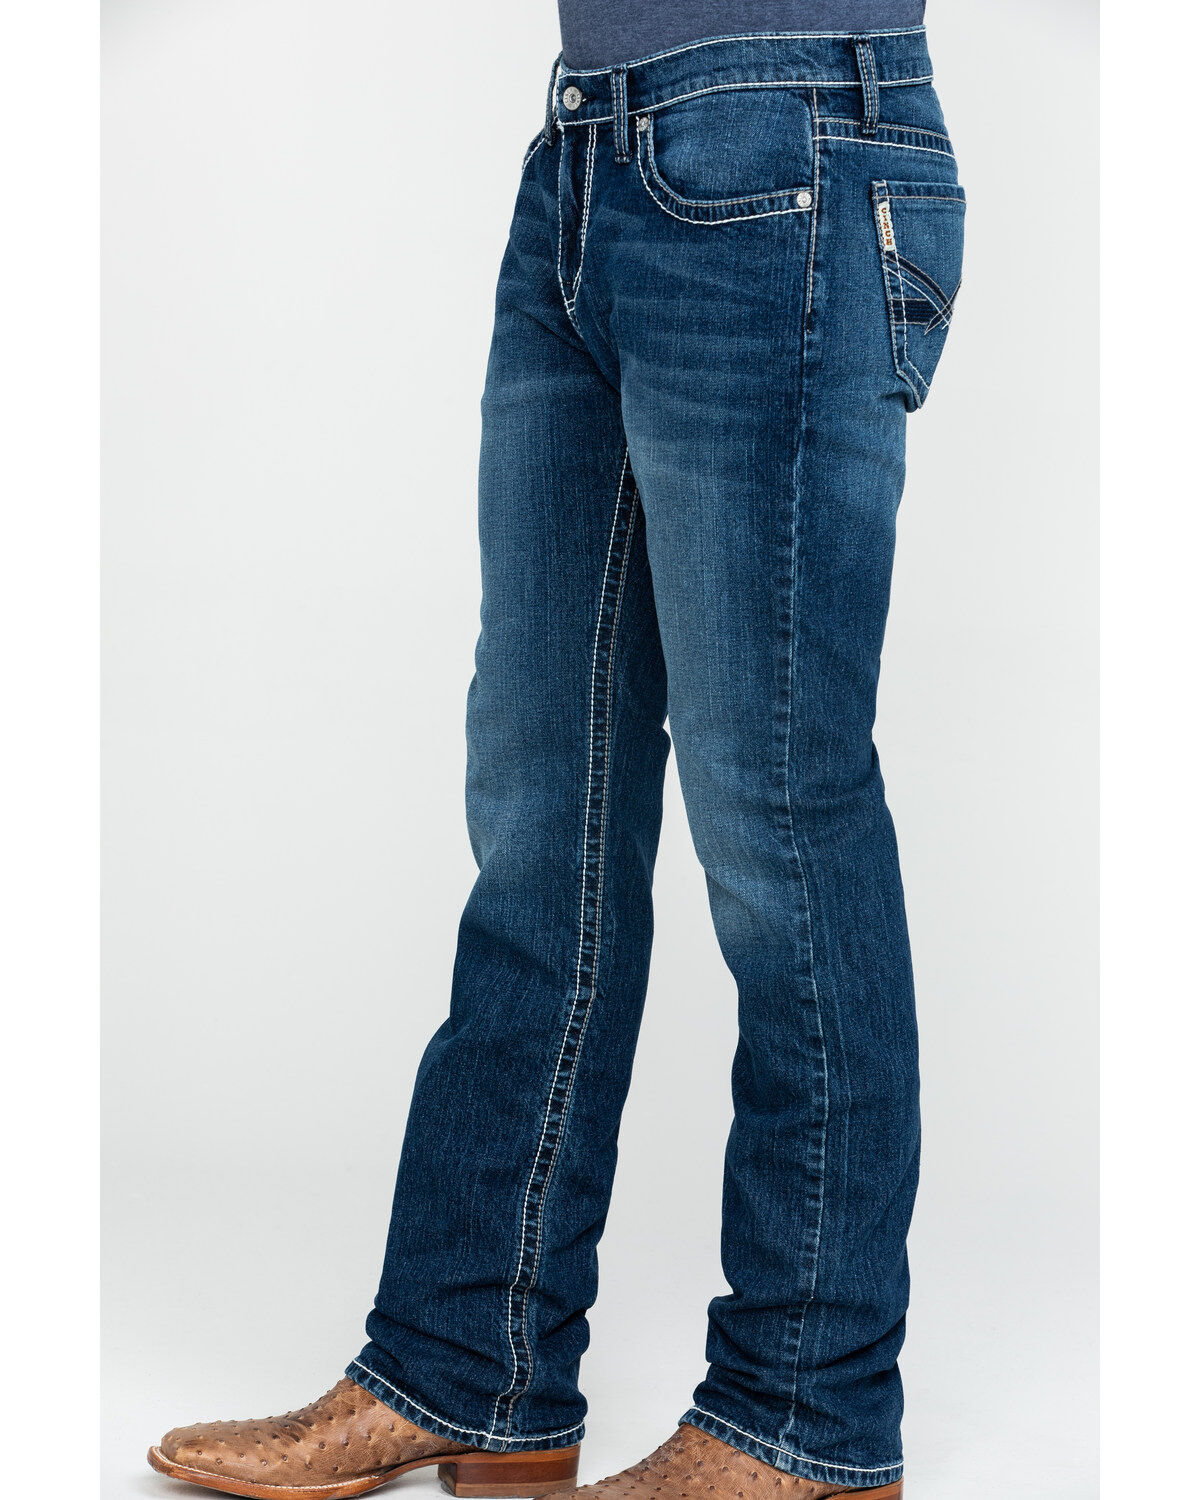 cinch ian jeans